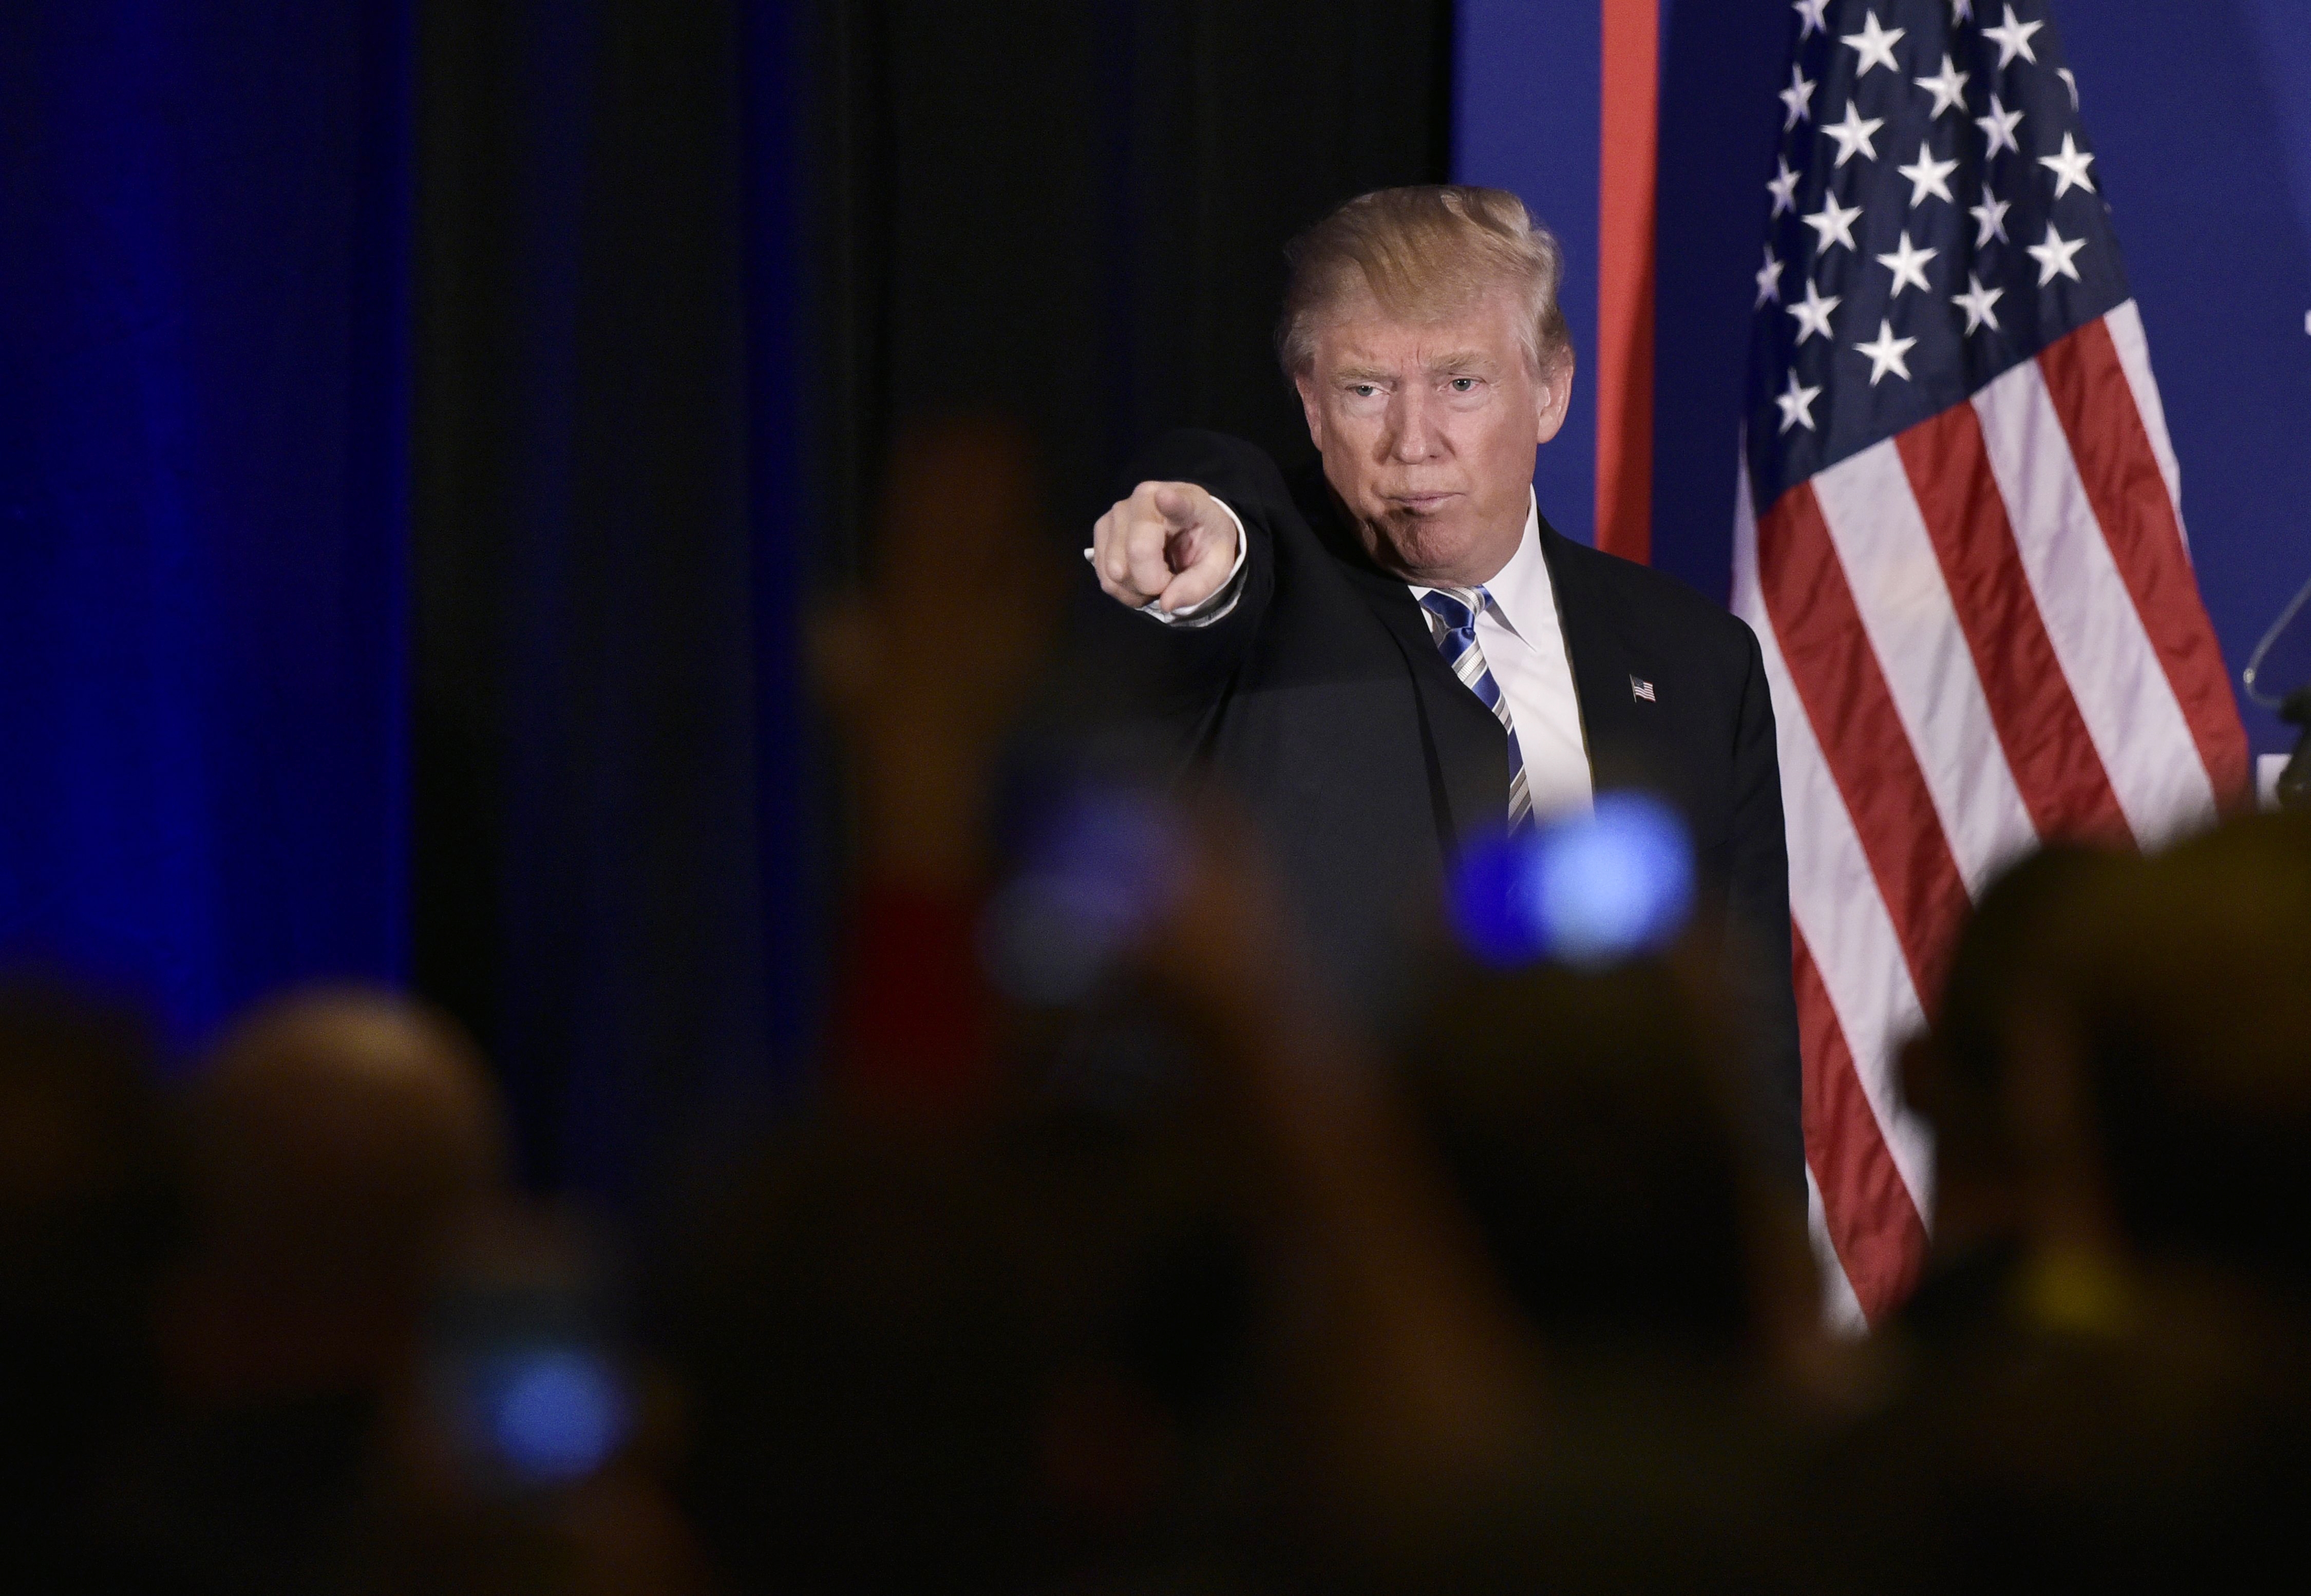  Donald Trump dio su primera conferencia de prensa como presidente electo